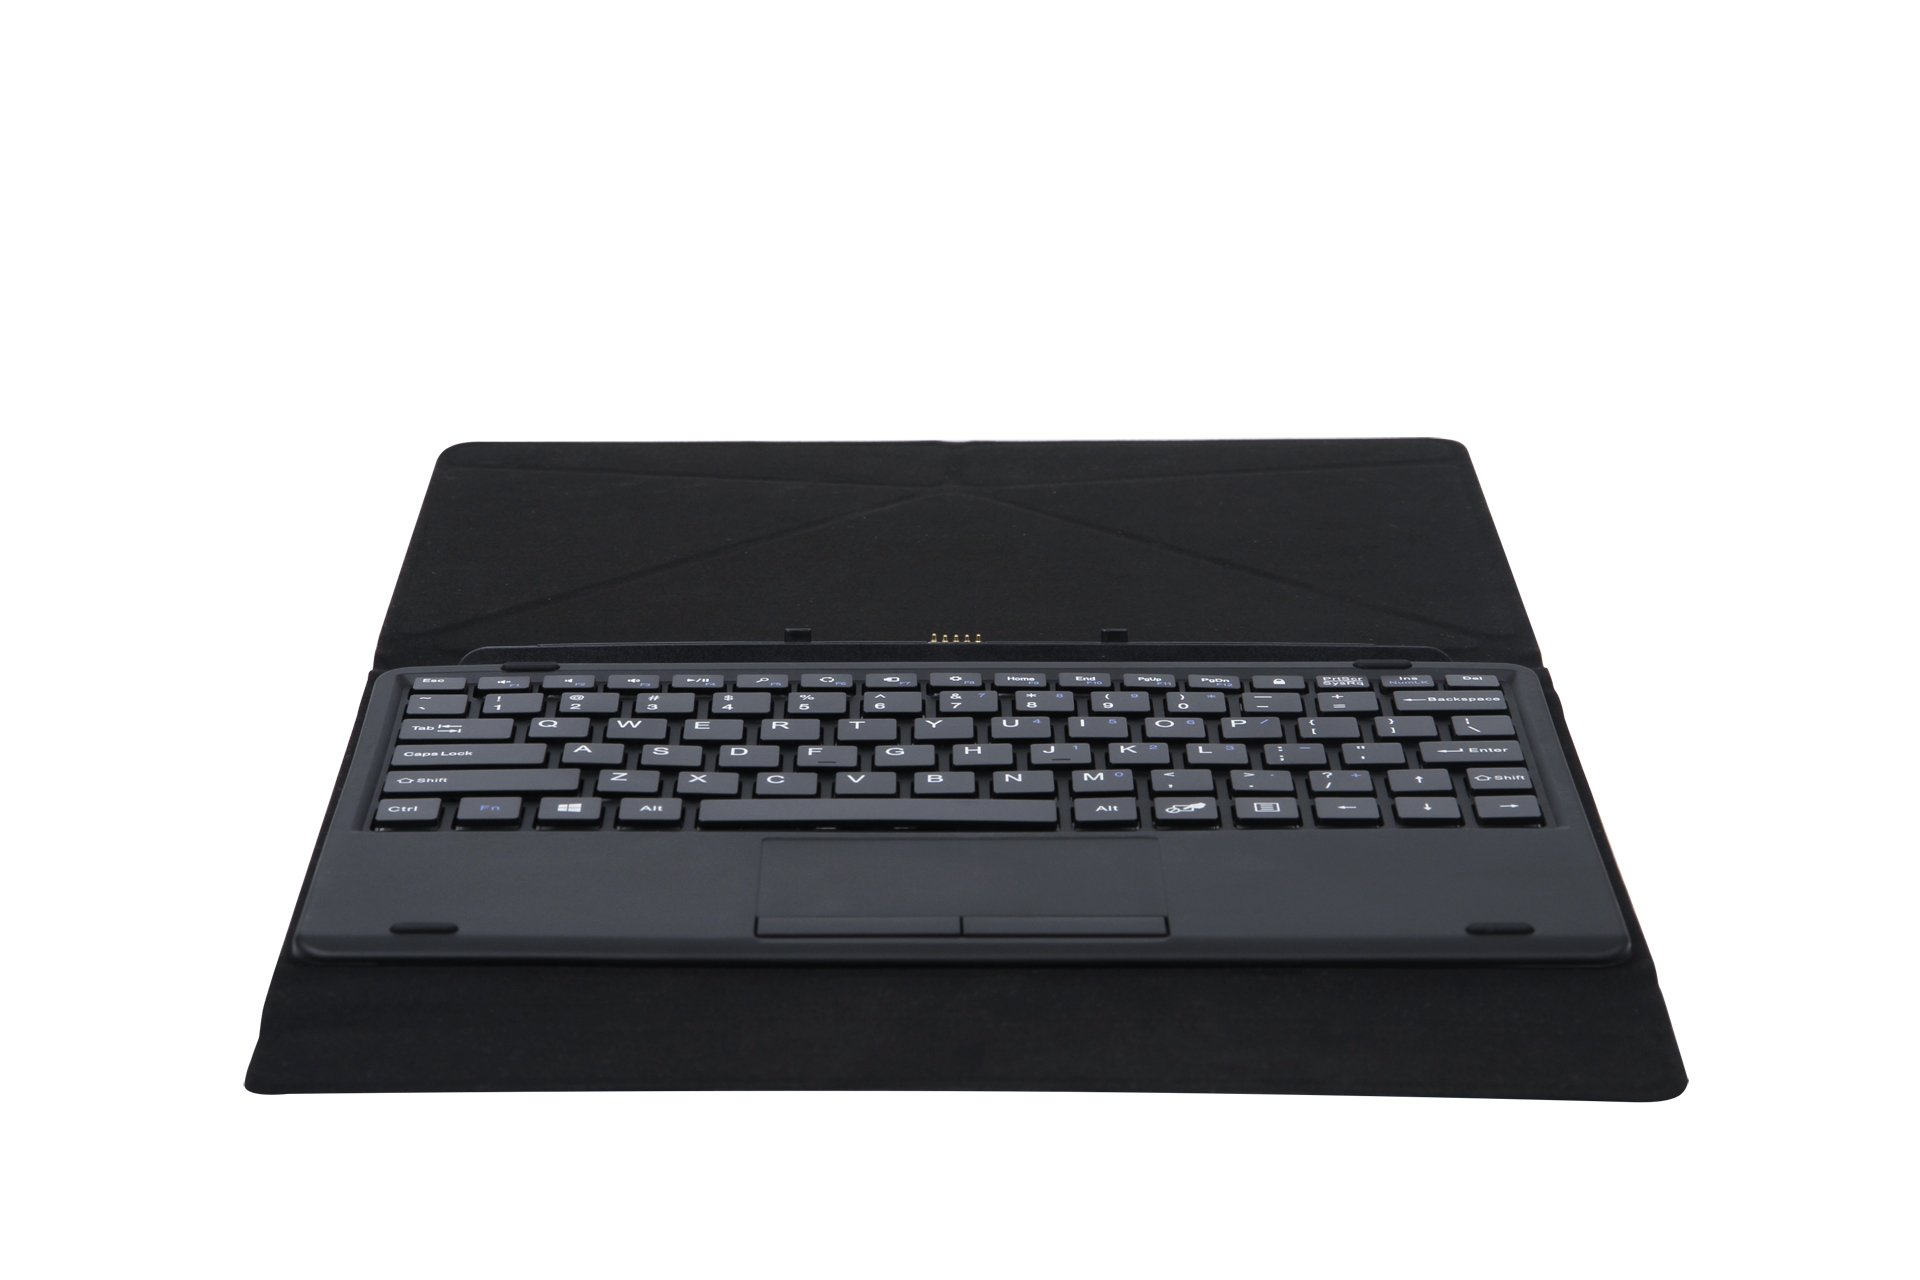 Original-Magnetic-Tablet-keyboard-for-W10-Pro-Tablet-1431937-1